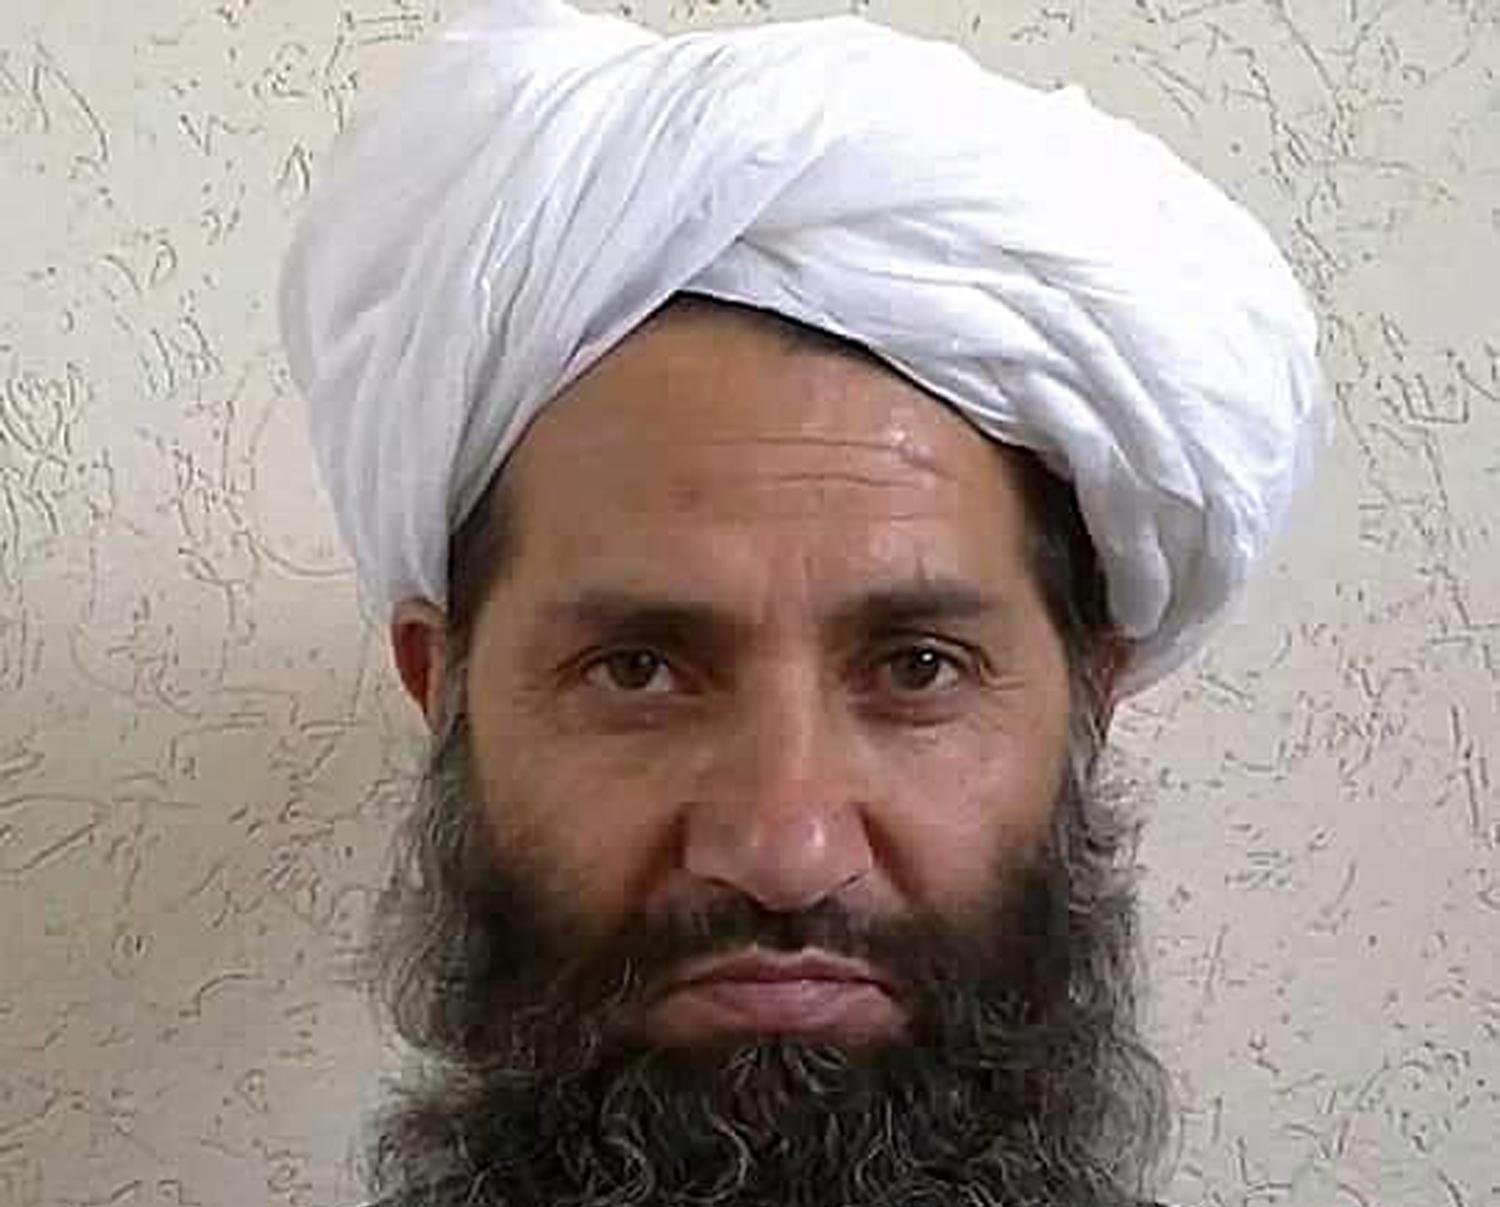 Talibanernas ledare Mullah Haibatullah Akhundzada